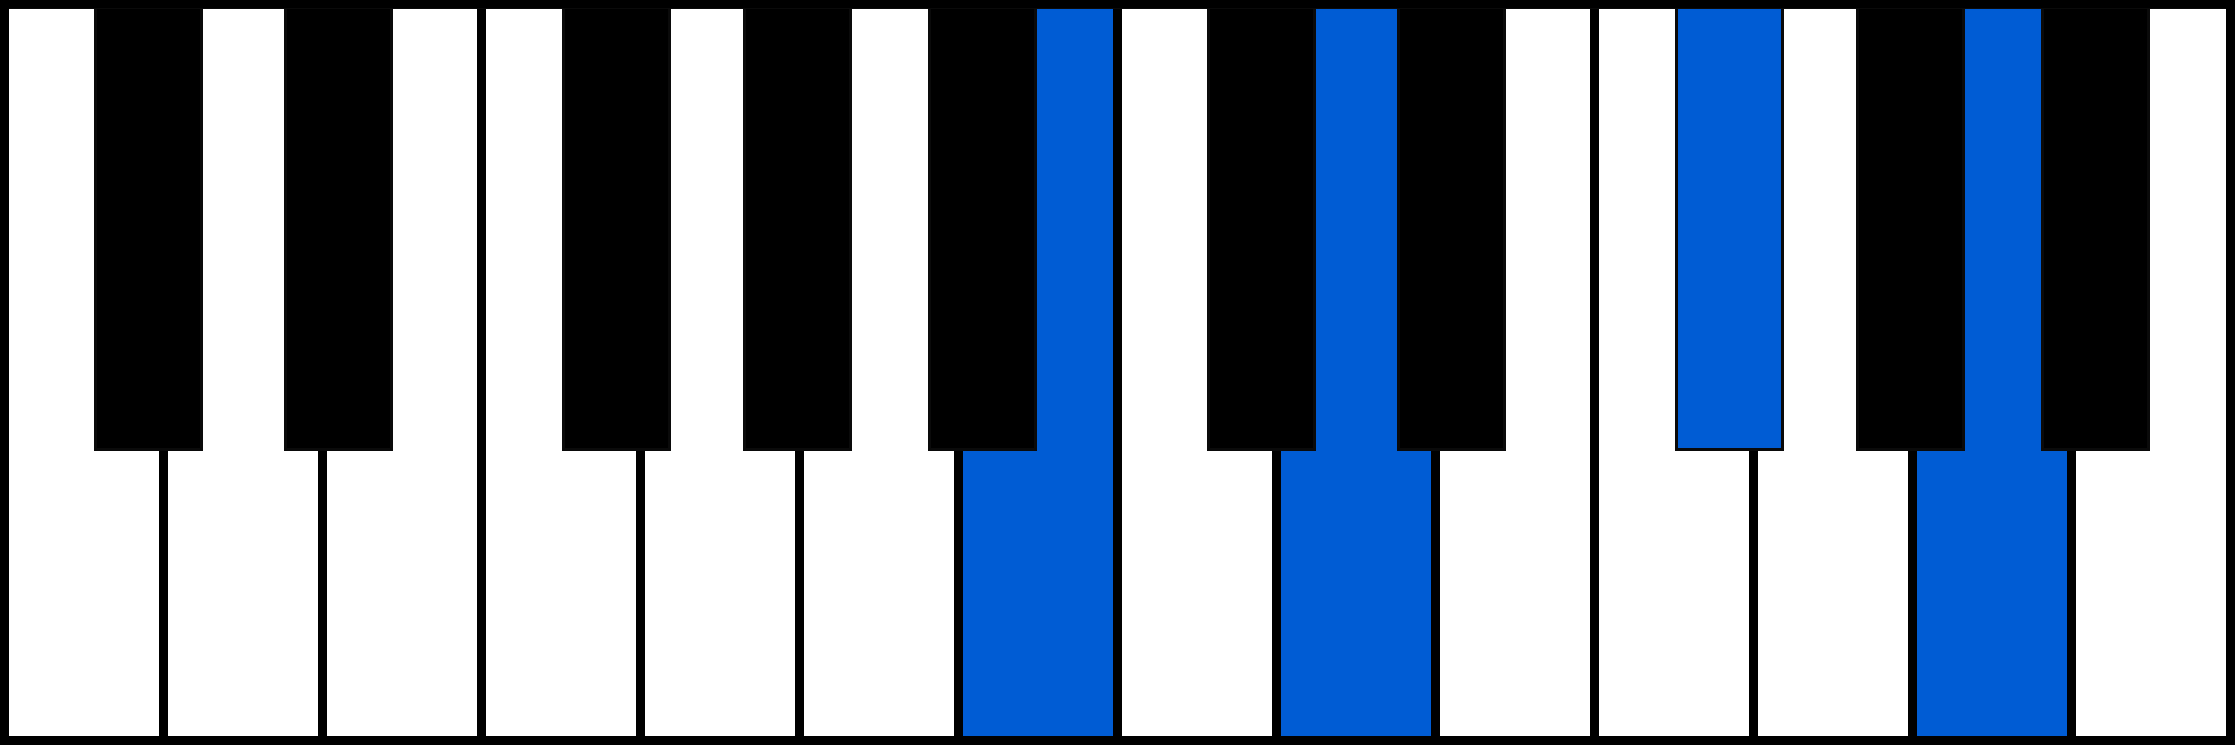 Hm7 piano chord